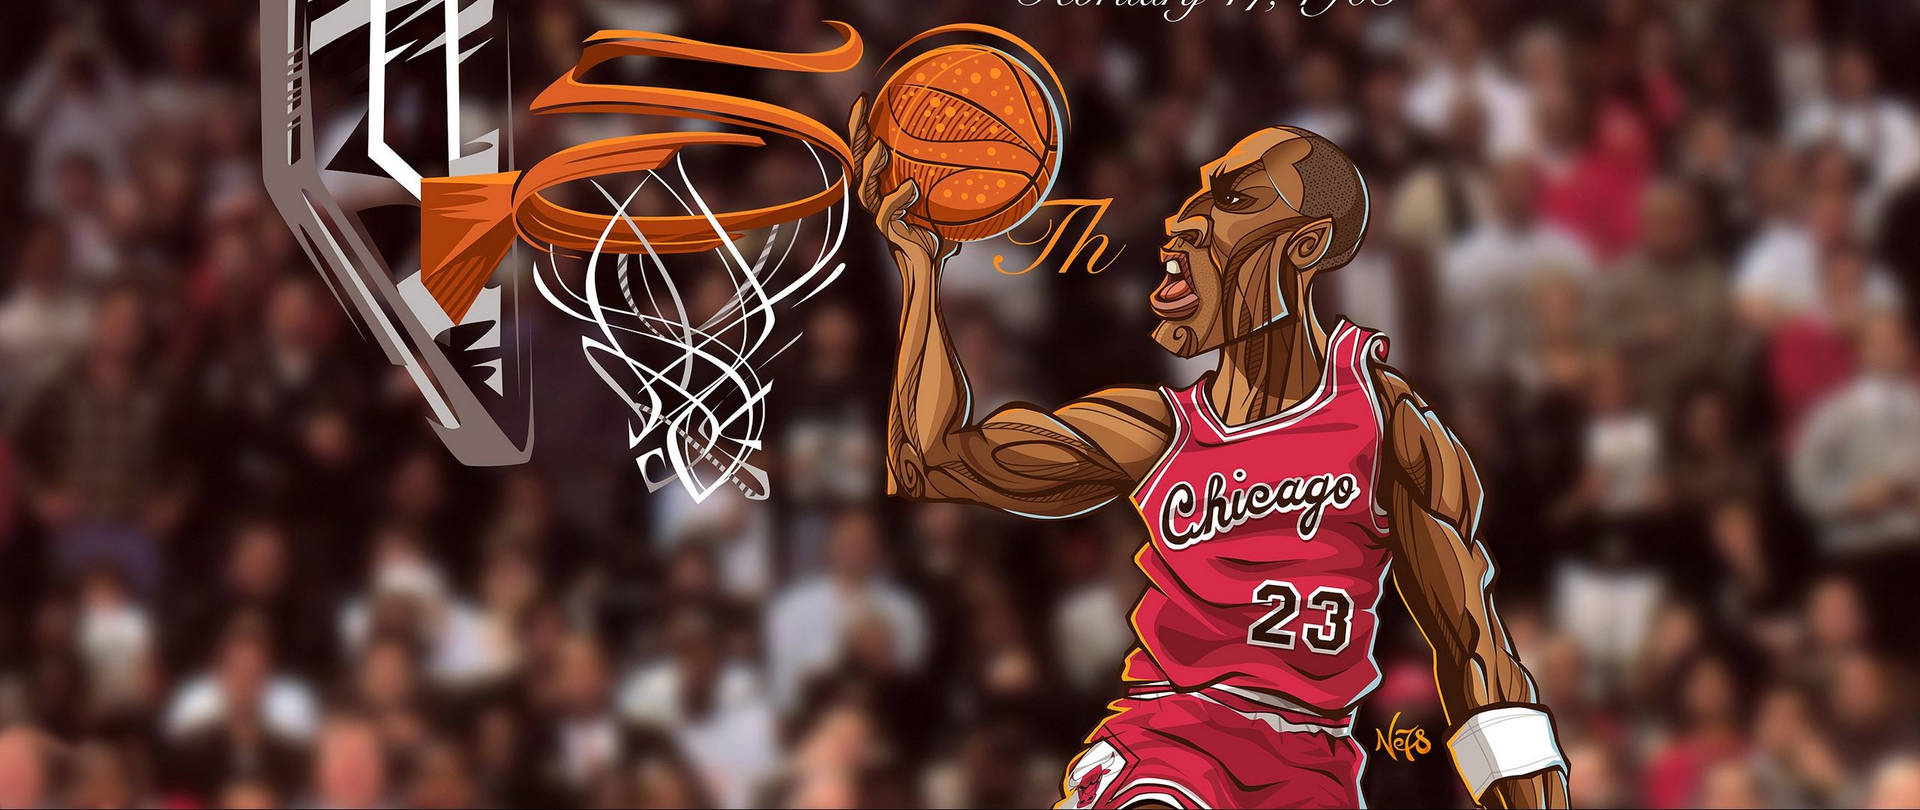 Michael Jordan Cartoon Art